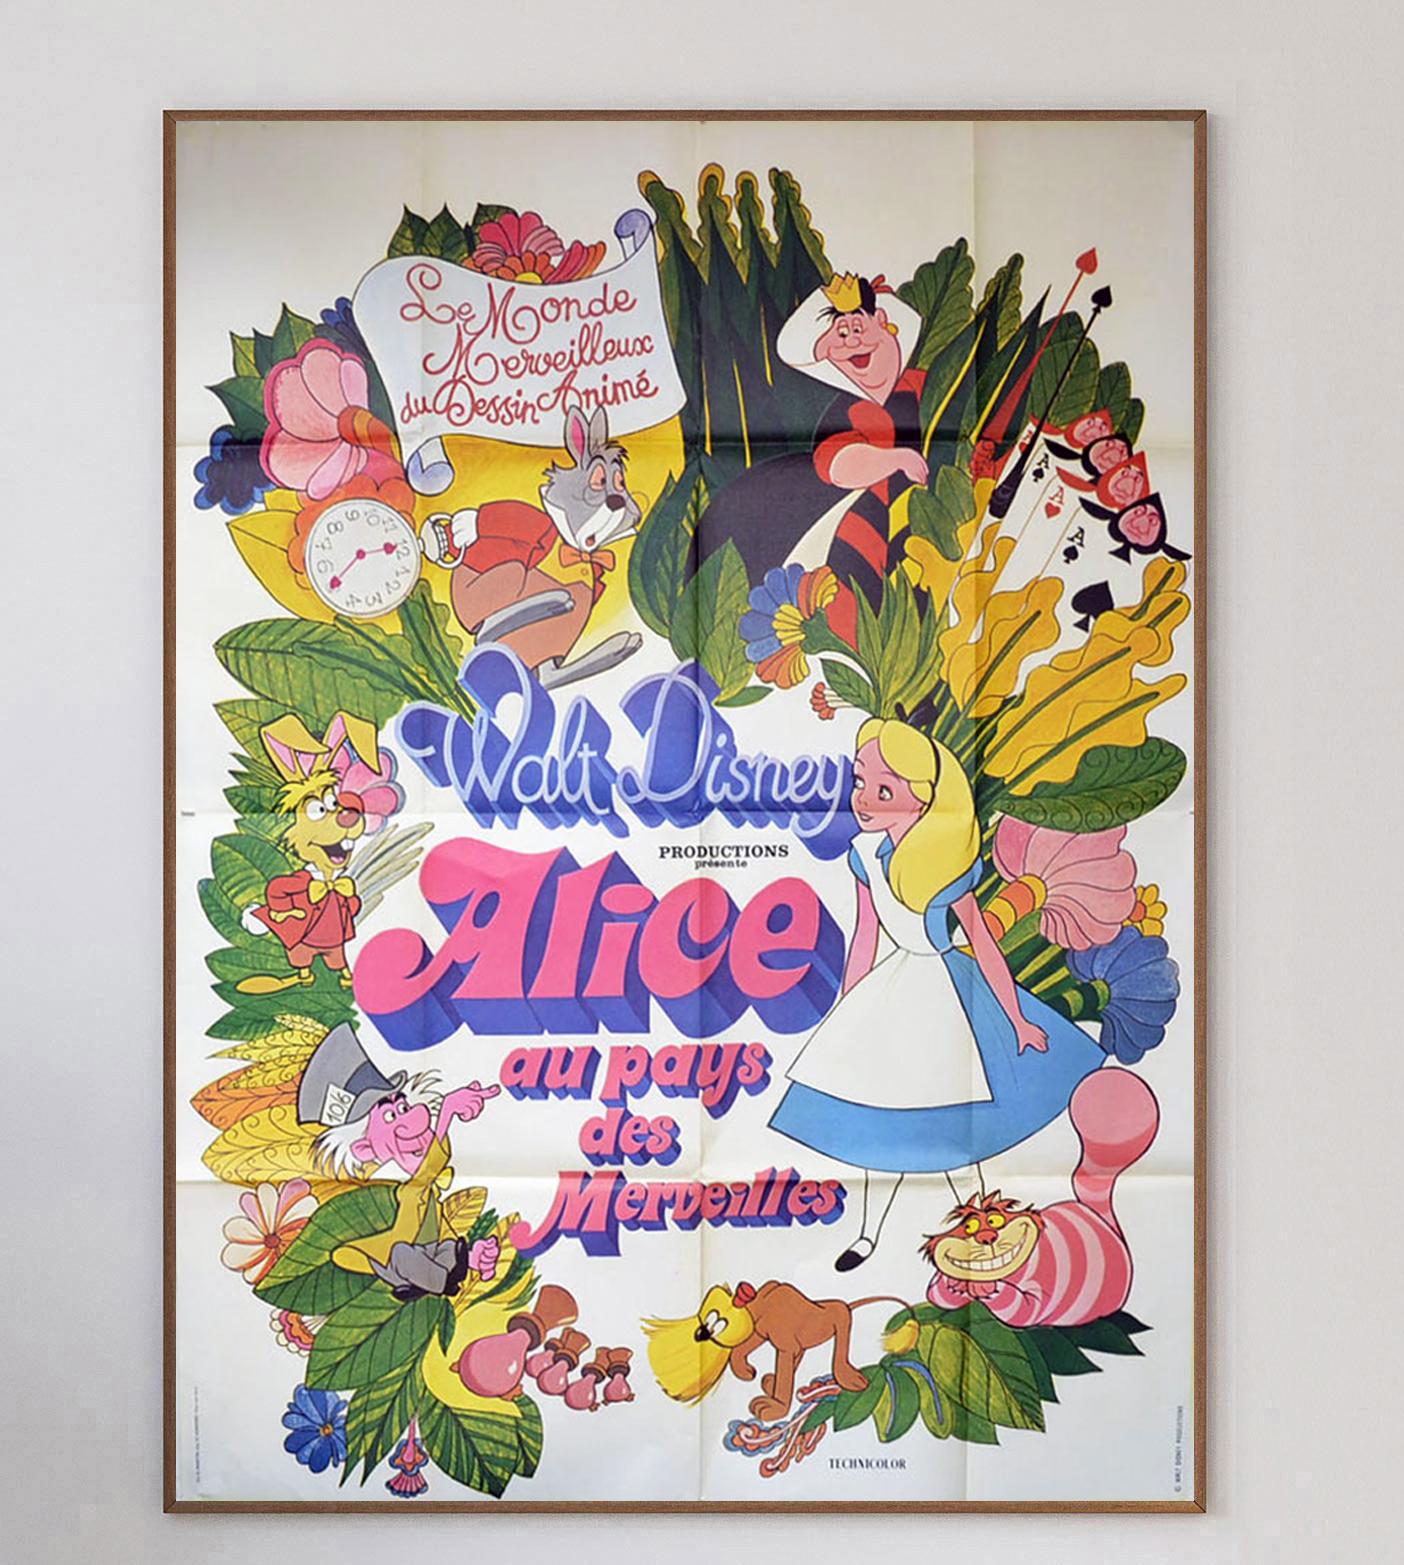 Wunderschön illustriertes Poster von Disneys Alice im Wunderland.

Alice im Wunderland ist ein 1951 von Walt Disney Productions produzierter amerikanischer musikalischer Fantasy-Abenteuerfilm, der auf den Alice-Büchern von Lewis Carroll basiert. Der